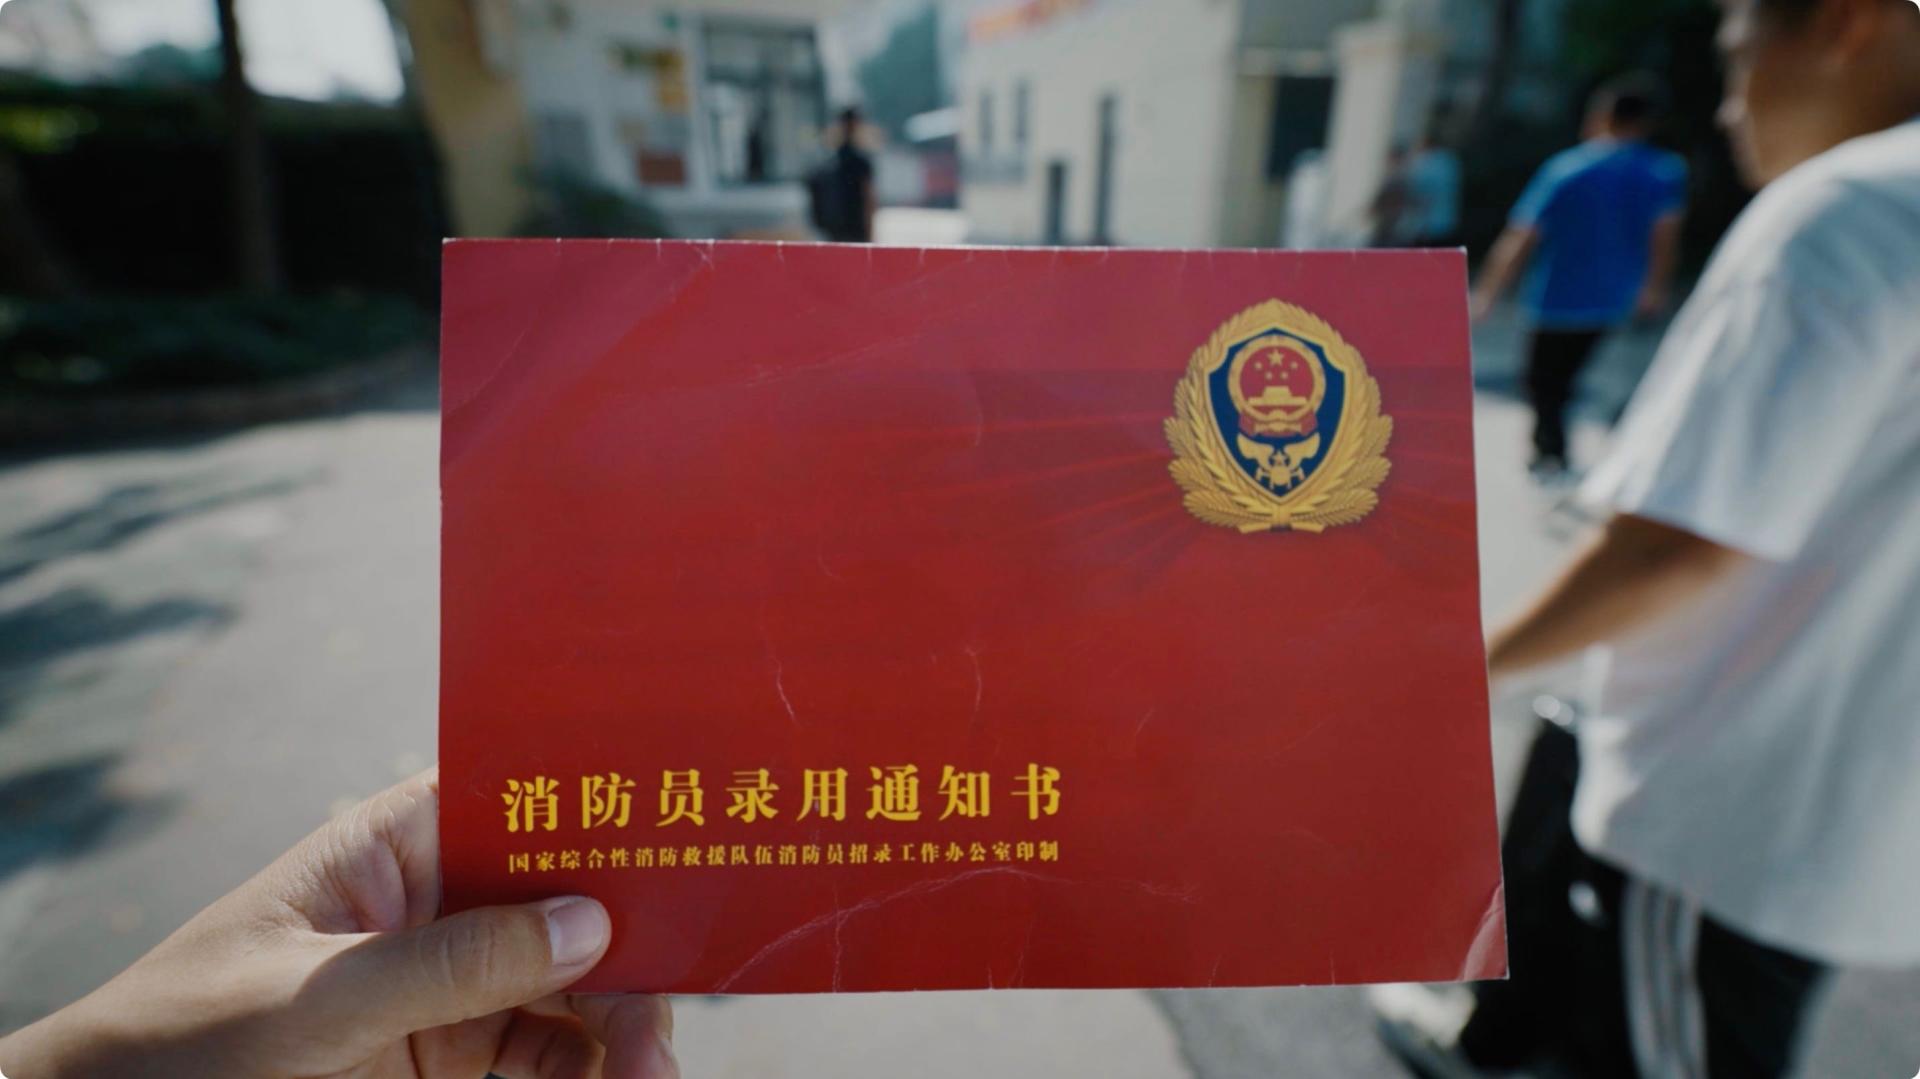 119中国消防招募主题短片